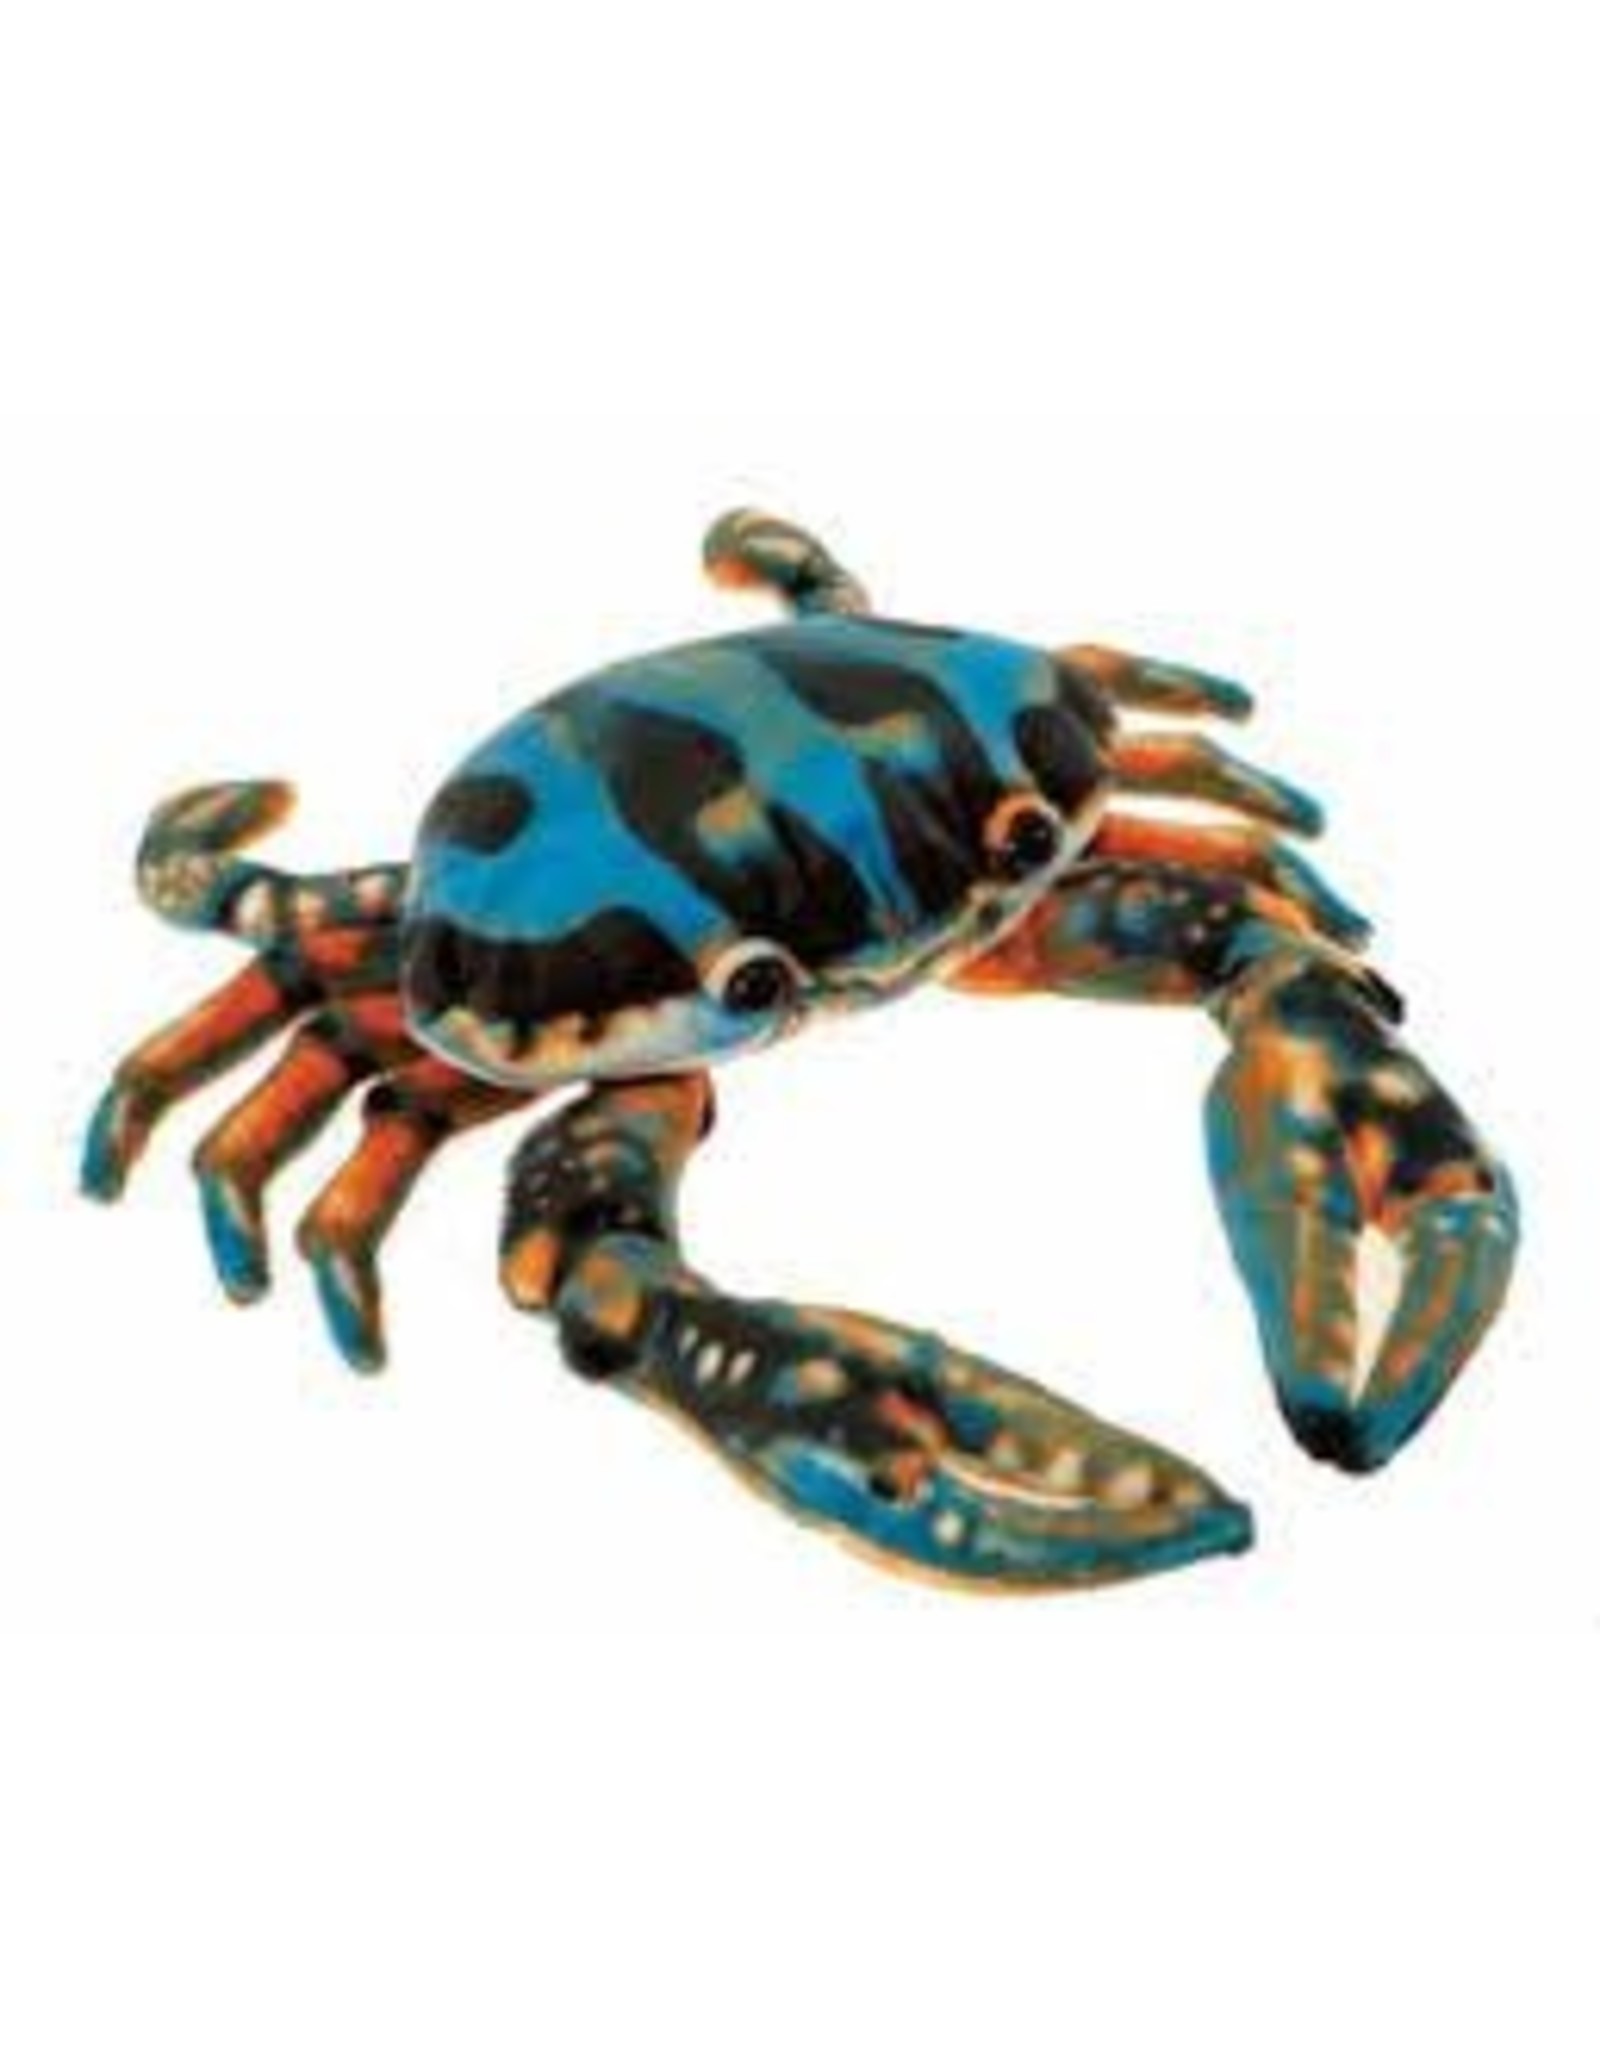 6" Blue Crab